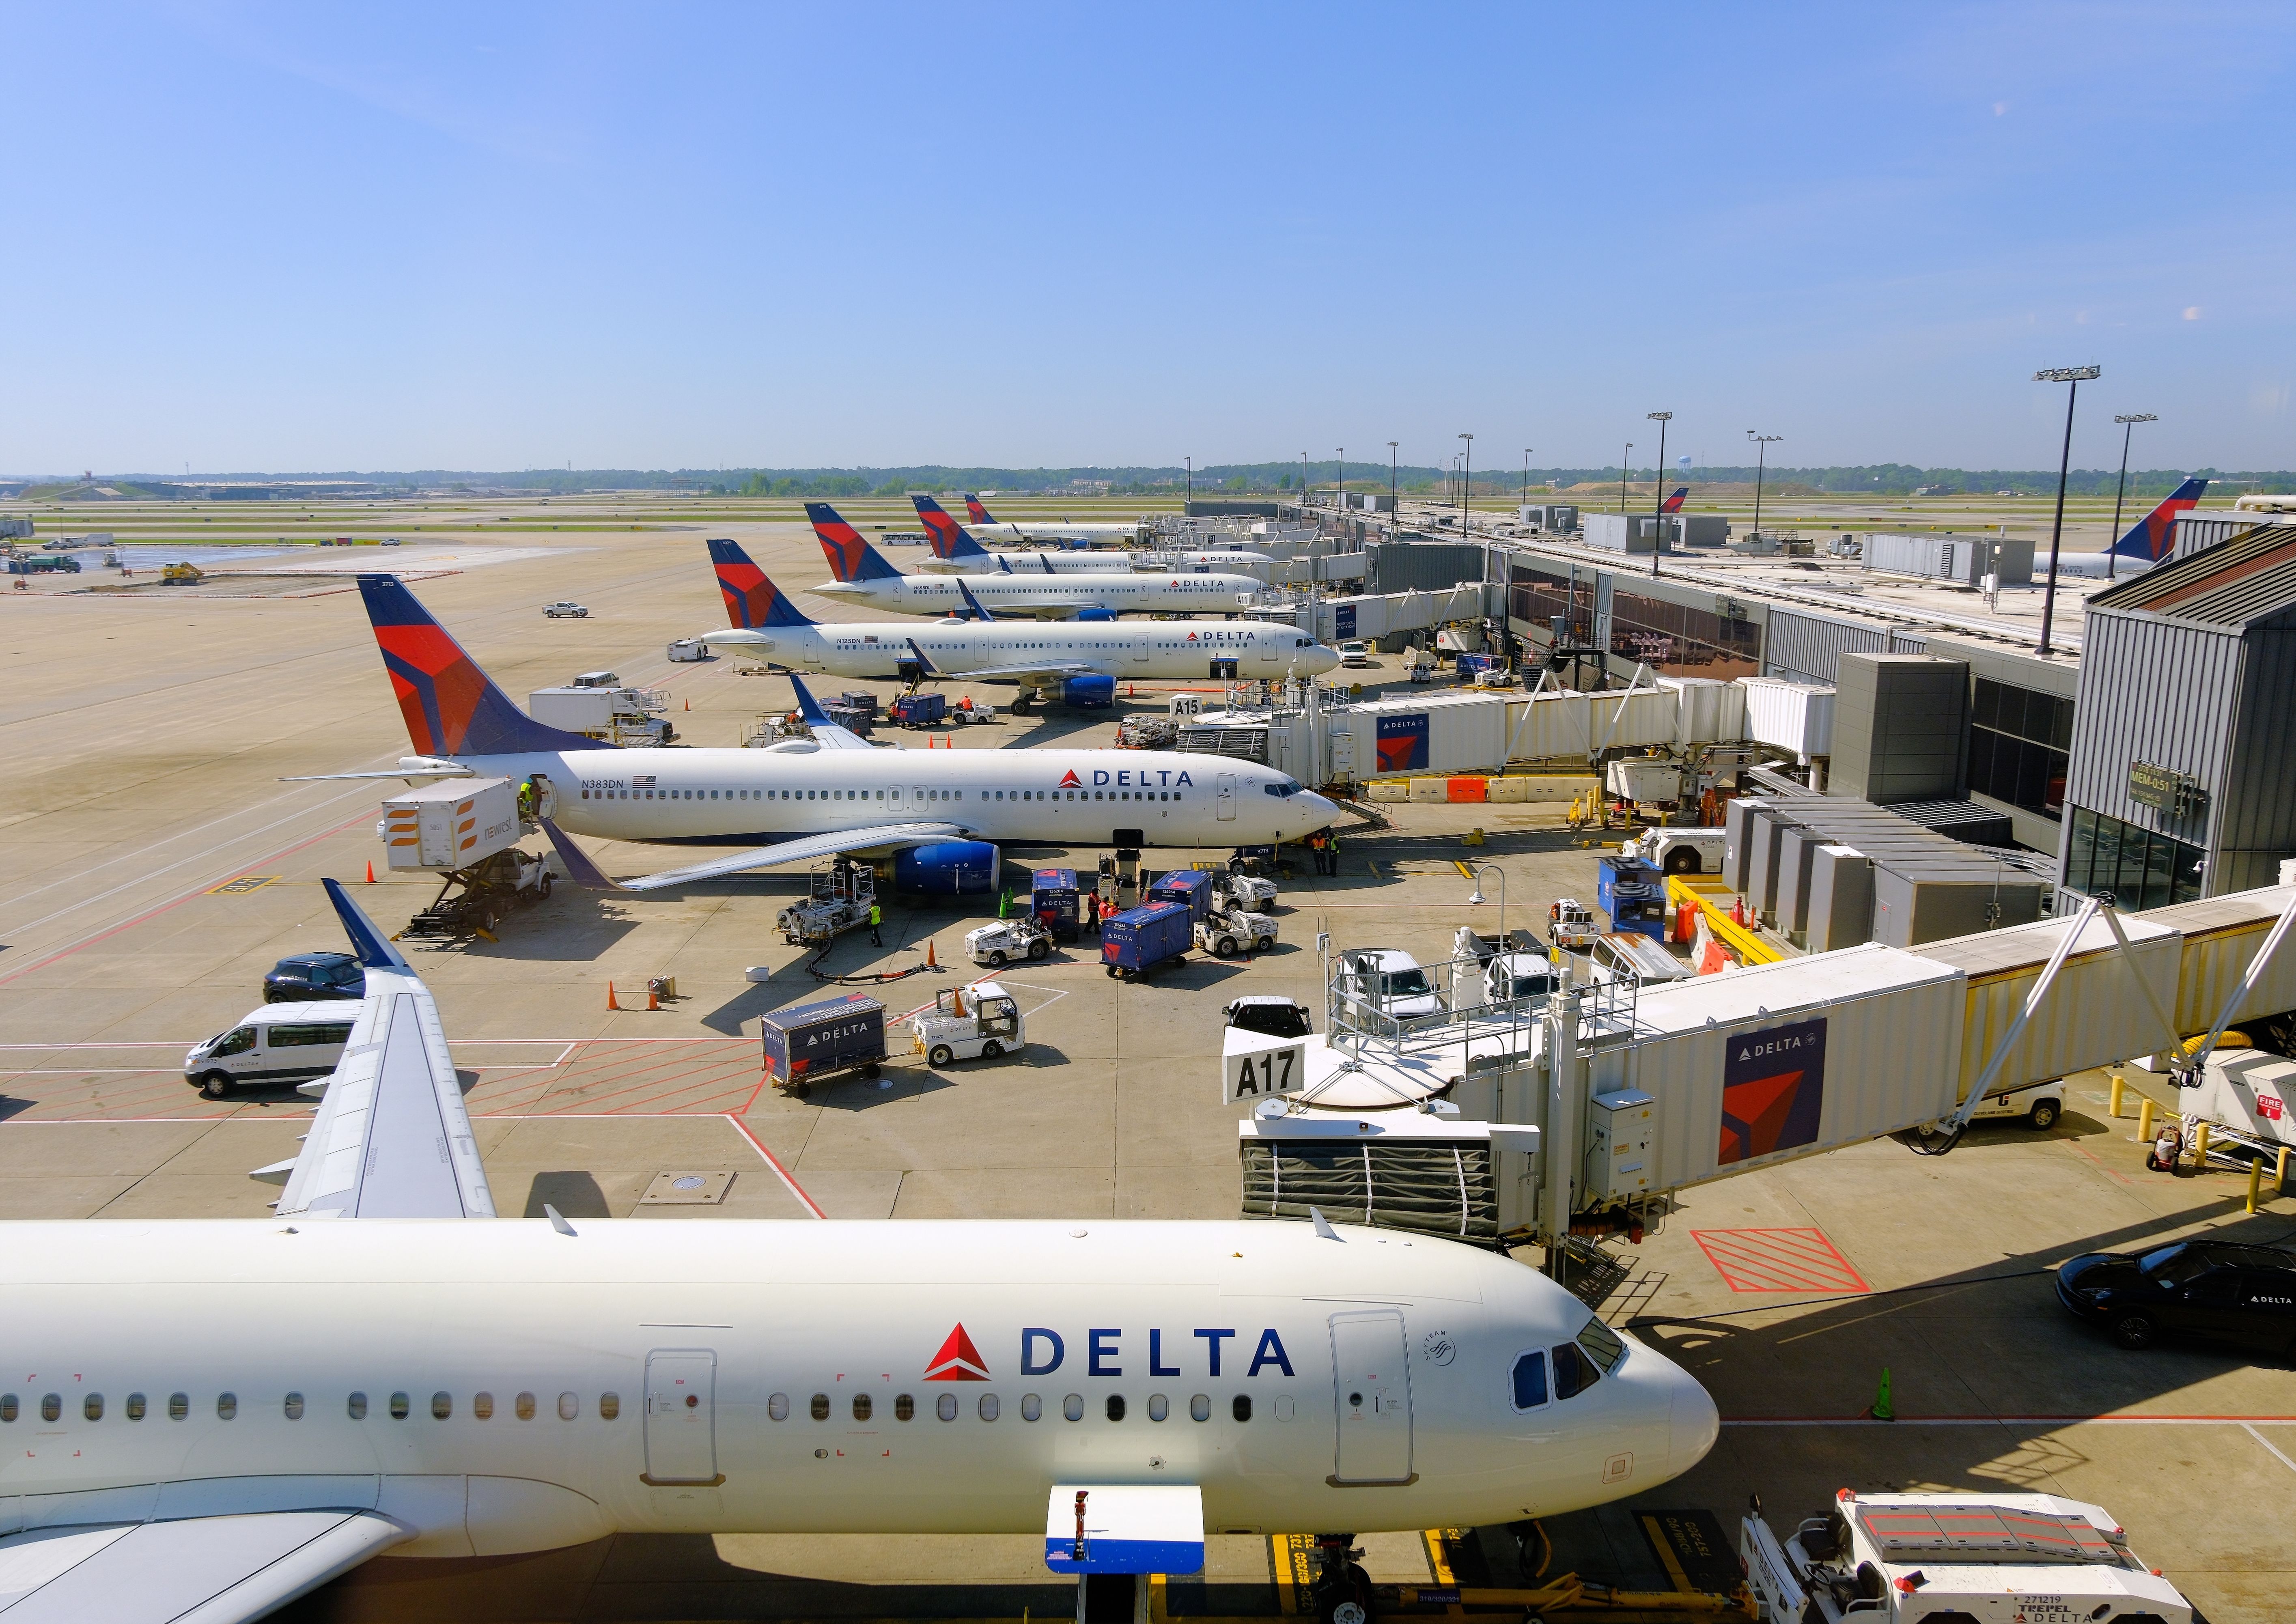 Several Delta Air Lines aircraft at Hartsfield-Jackson Atlanta International Airport.